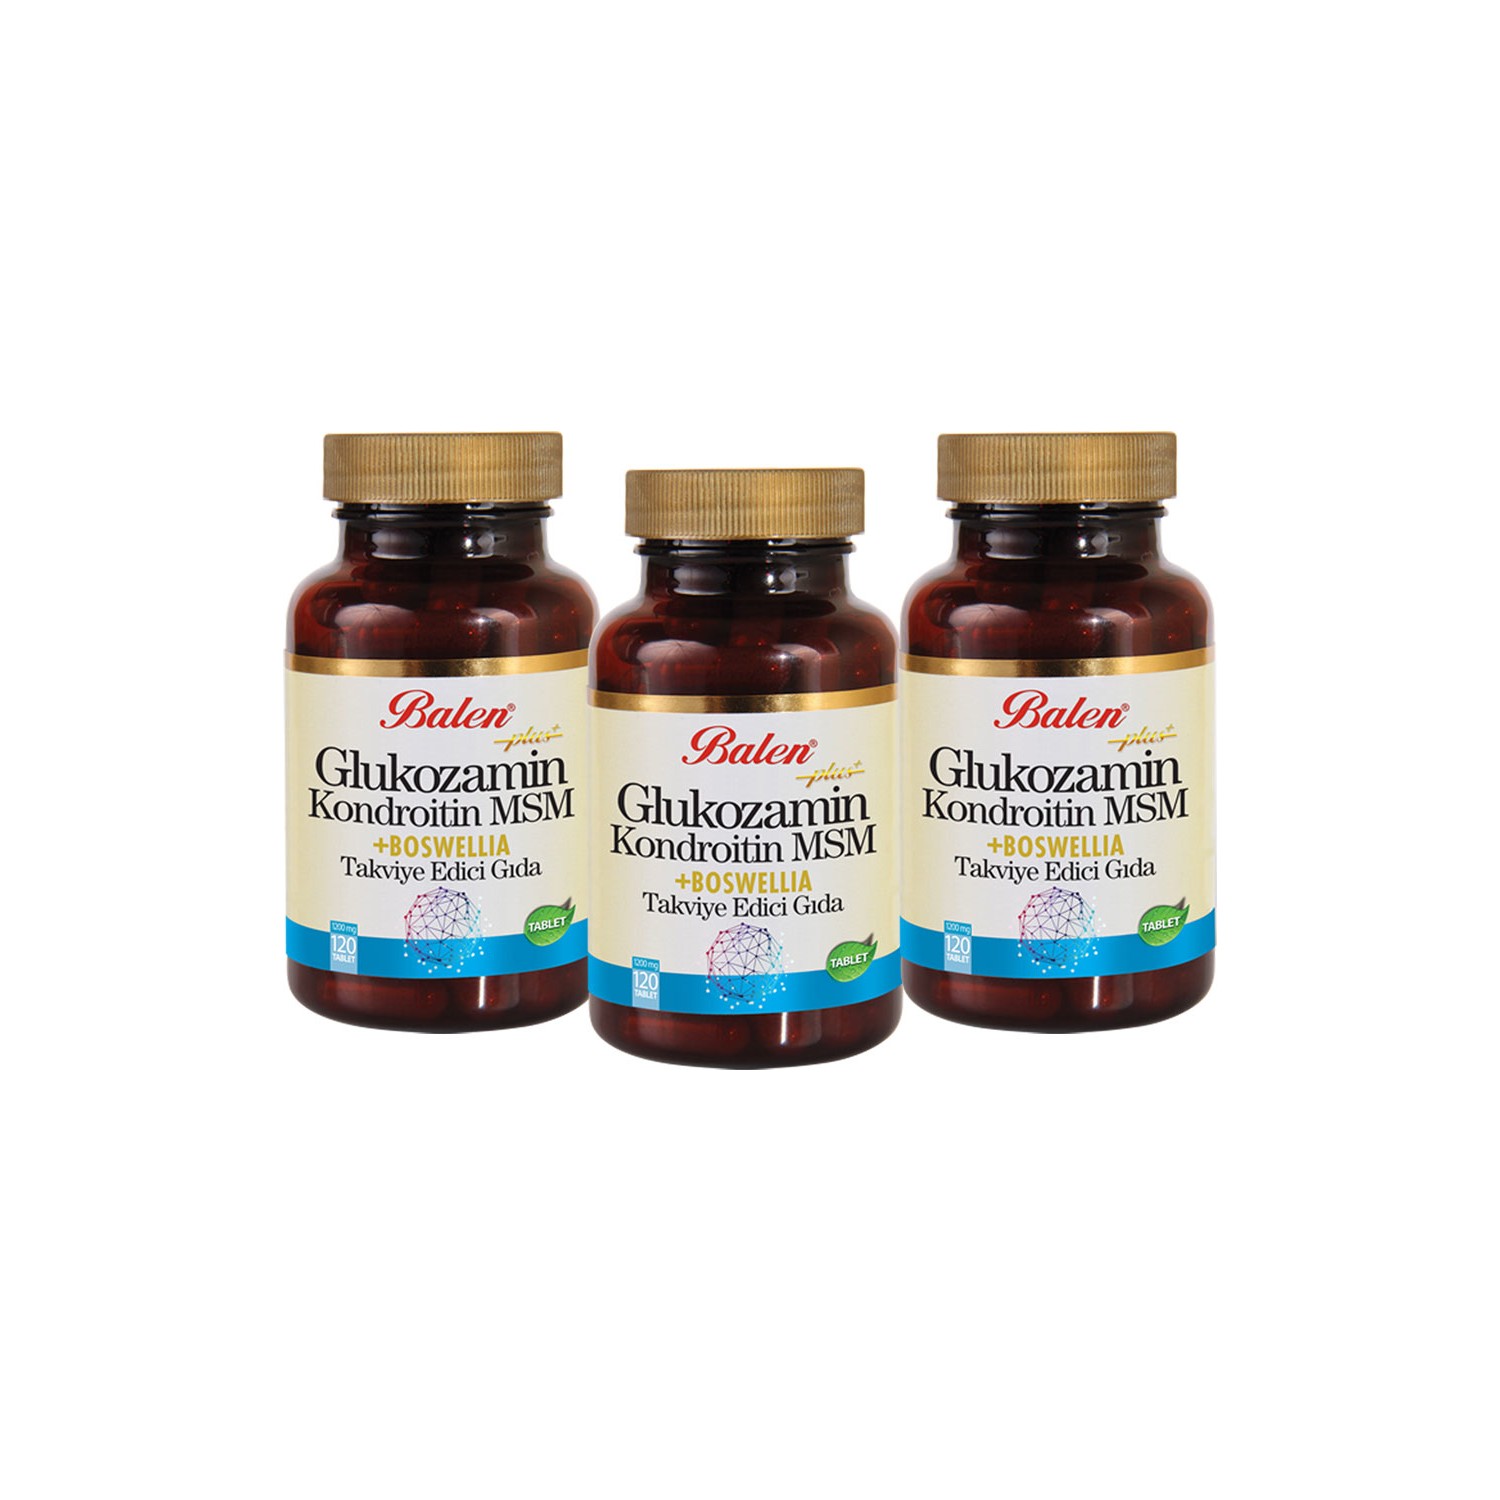 капсулы uniforce omega 3 6 9 1200 mg 120 шт Активная добавка глюкозамин Balen Chondroitin Msm Boswellia, 120 капсул, 1200 мг, 3 штуки